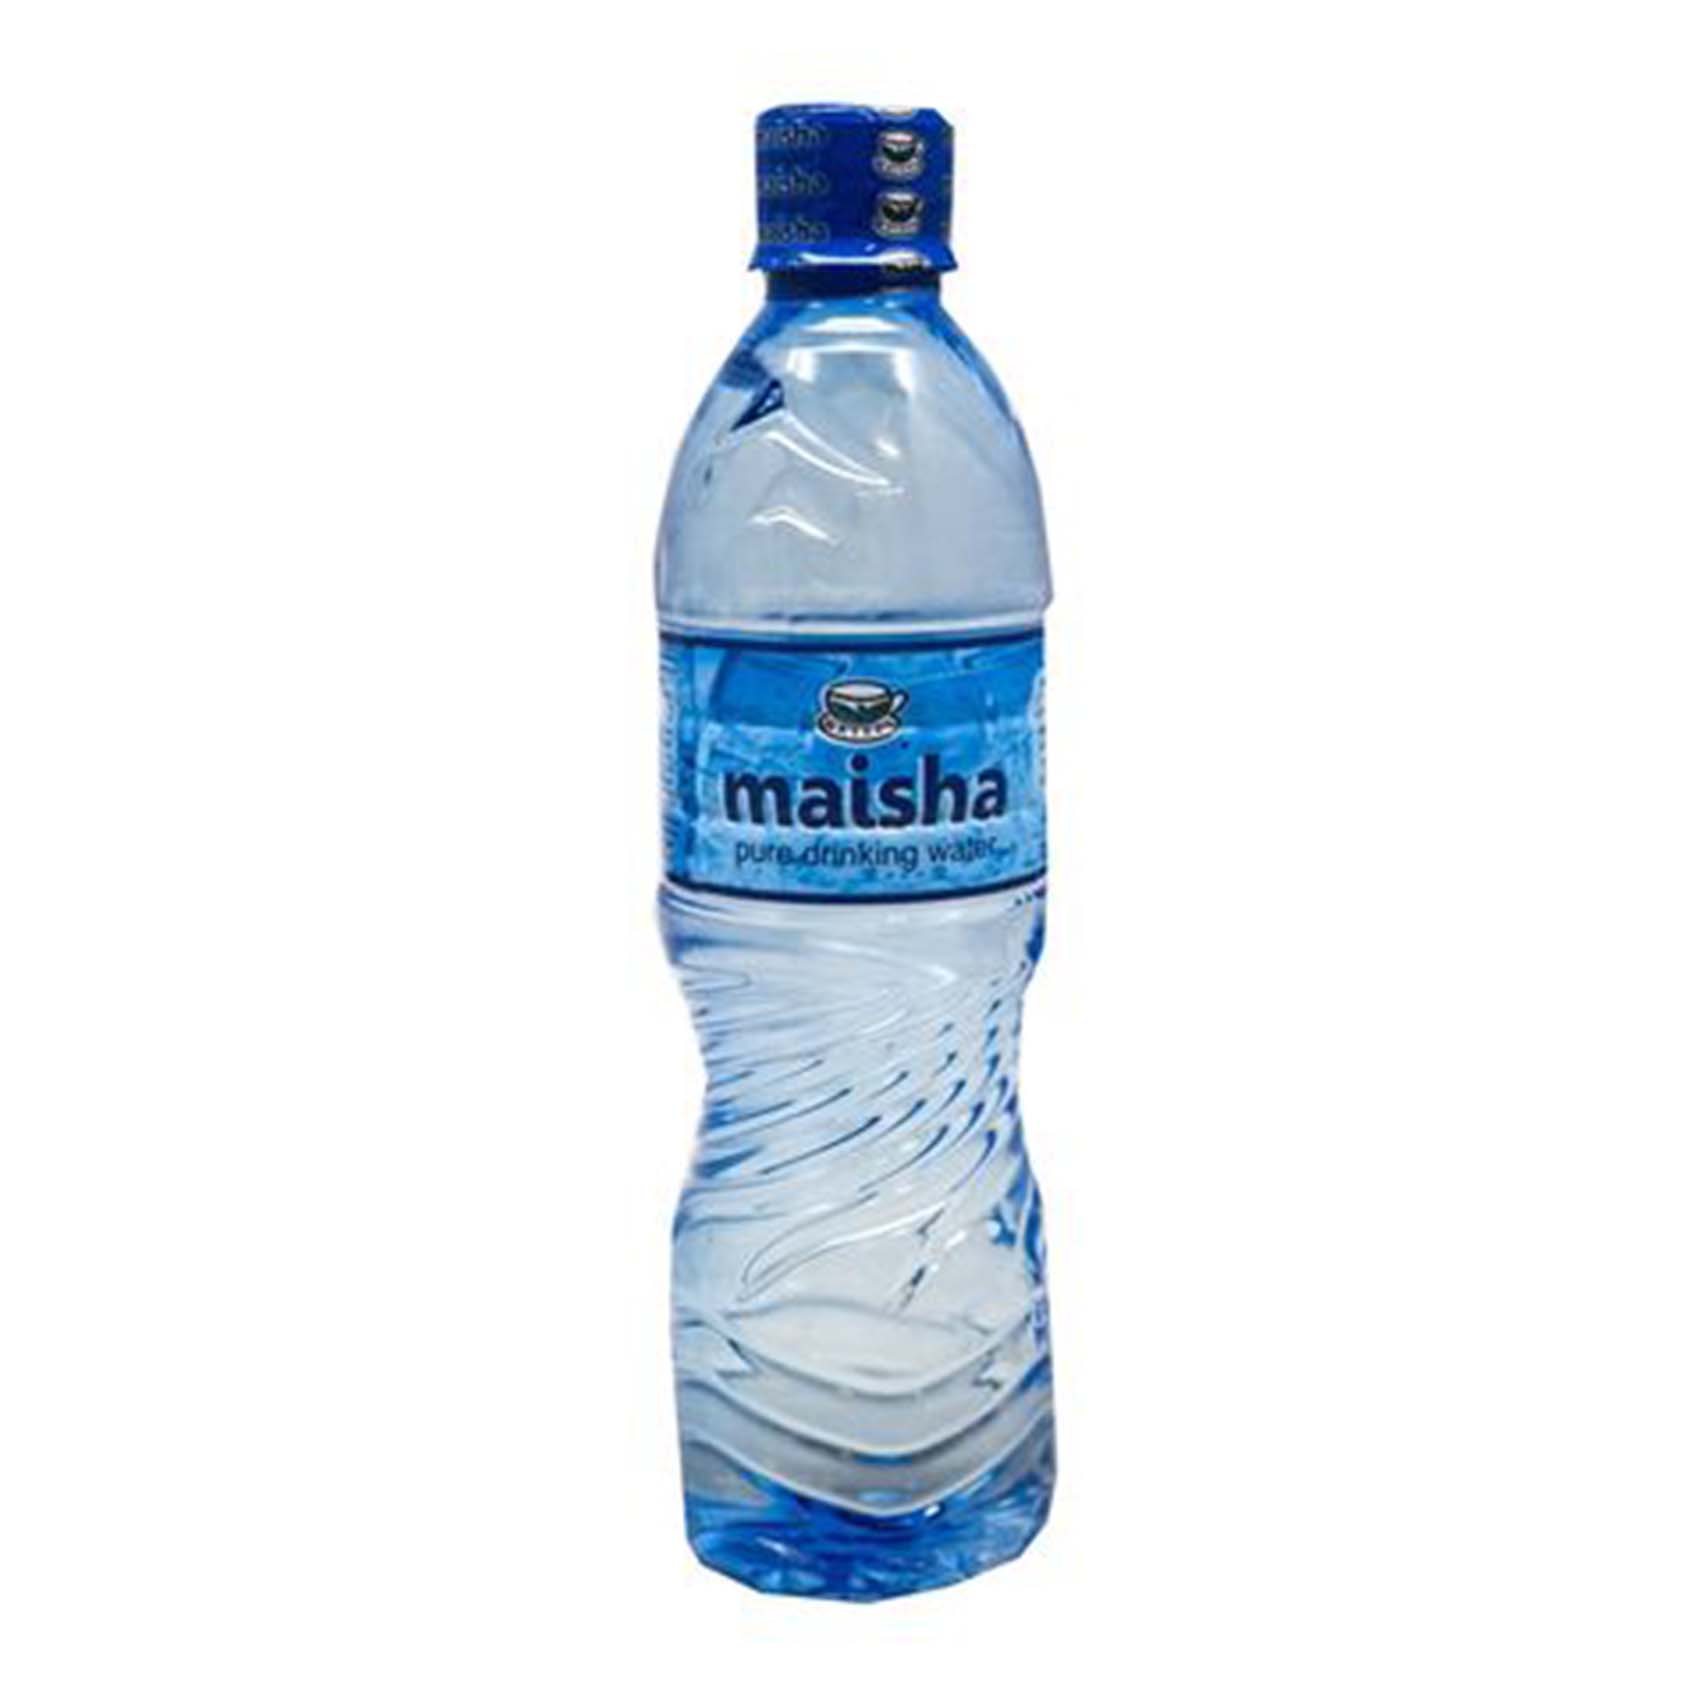 Maisha Drinking Water 500ml